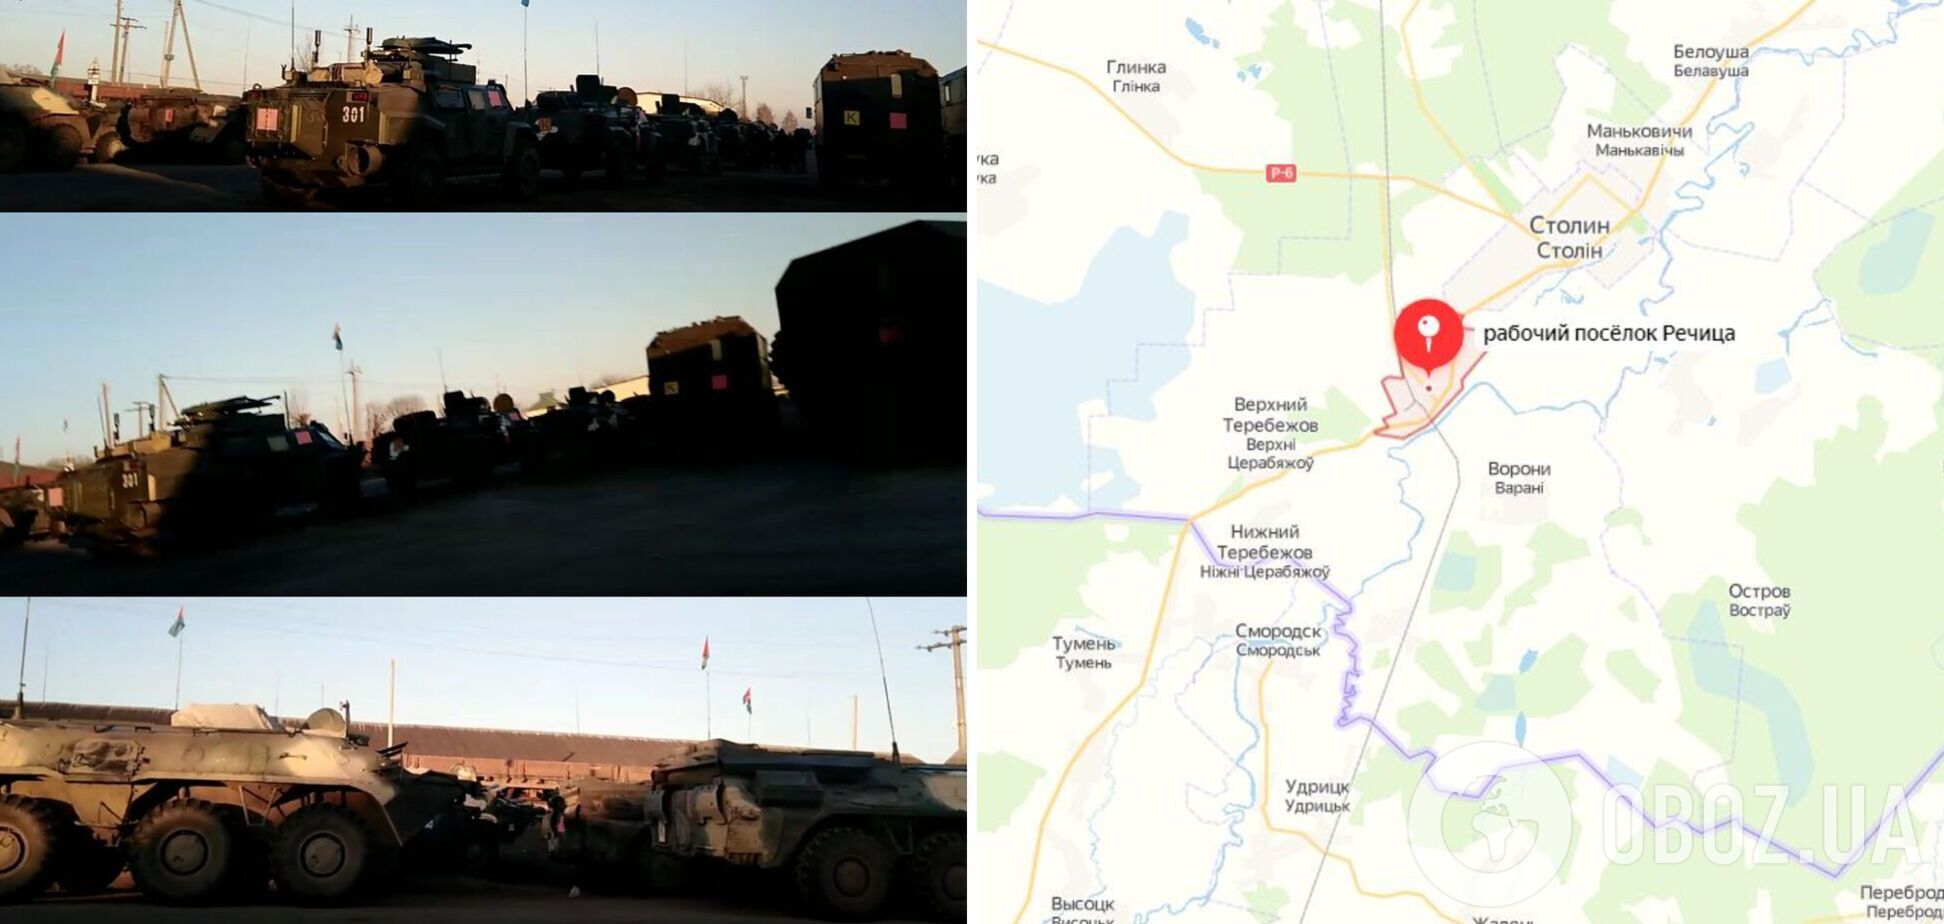 Возле украинской границы: в Беларуси заметили перемещение военной техники с опознавательными знаками